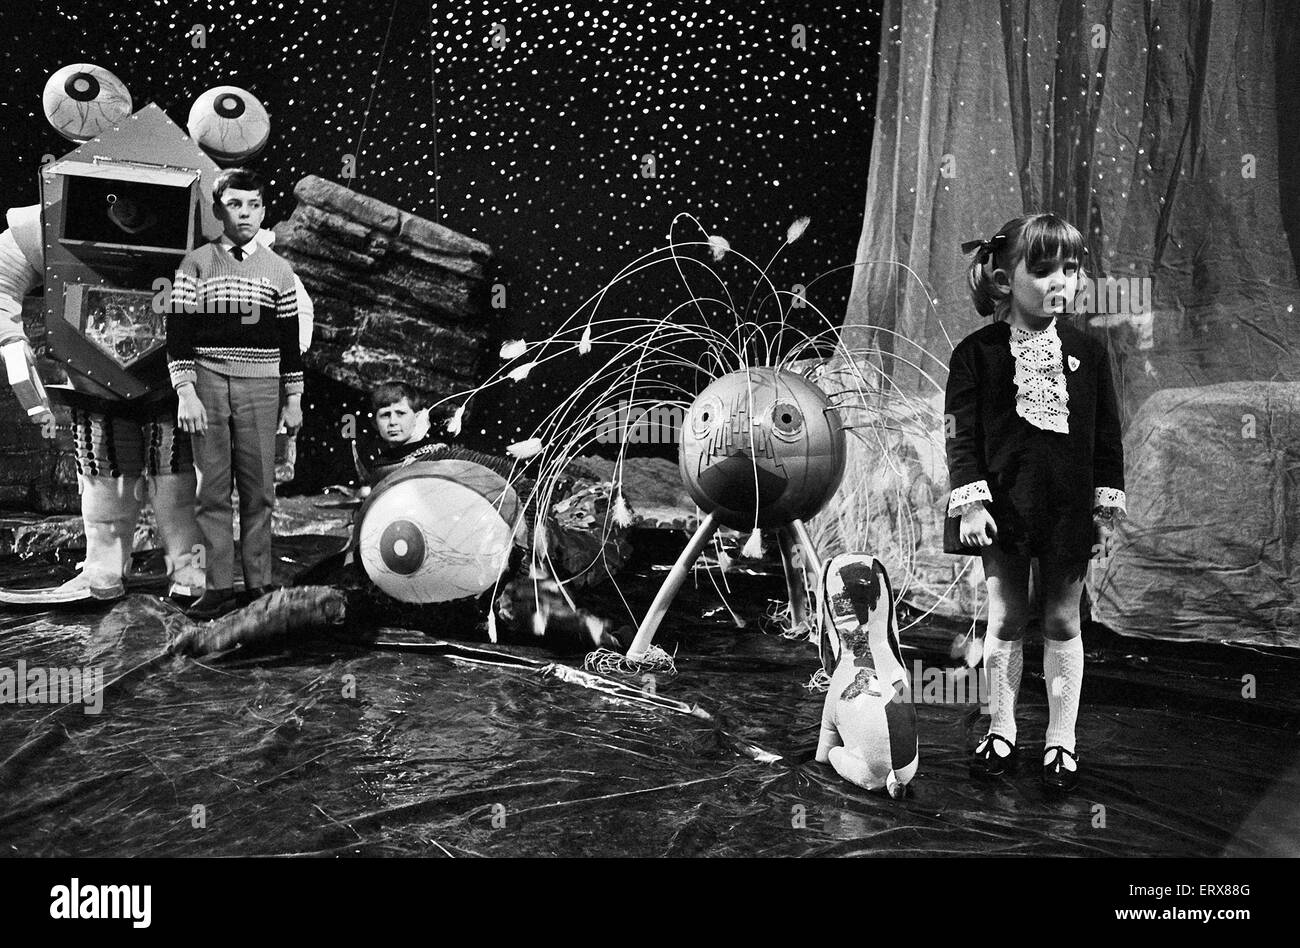 Dr qui Monster Concours organisé par la BBC's Blue Peter programme pour enfants à la BBC du studio. Picture Show's concurrents dans la compétition. Circa 1967 Banque D'Images